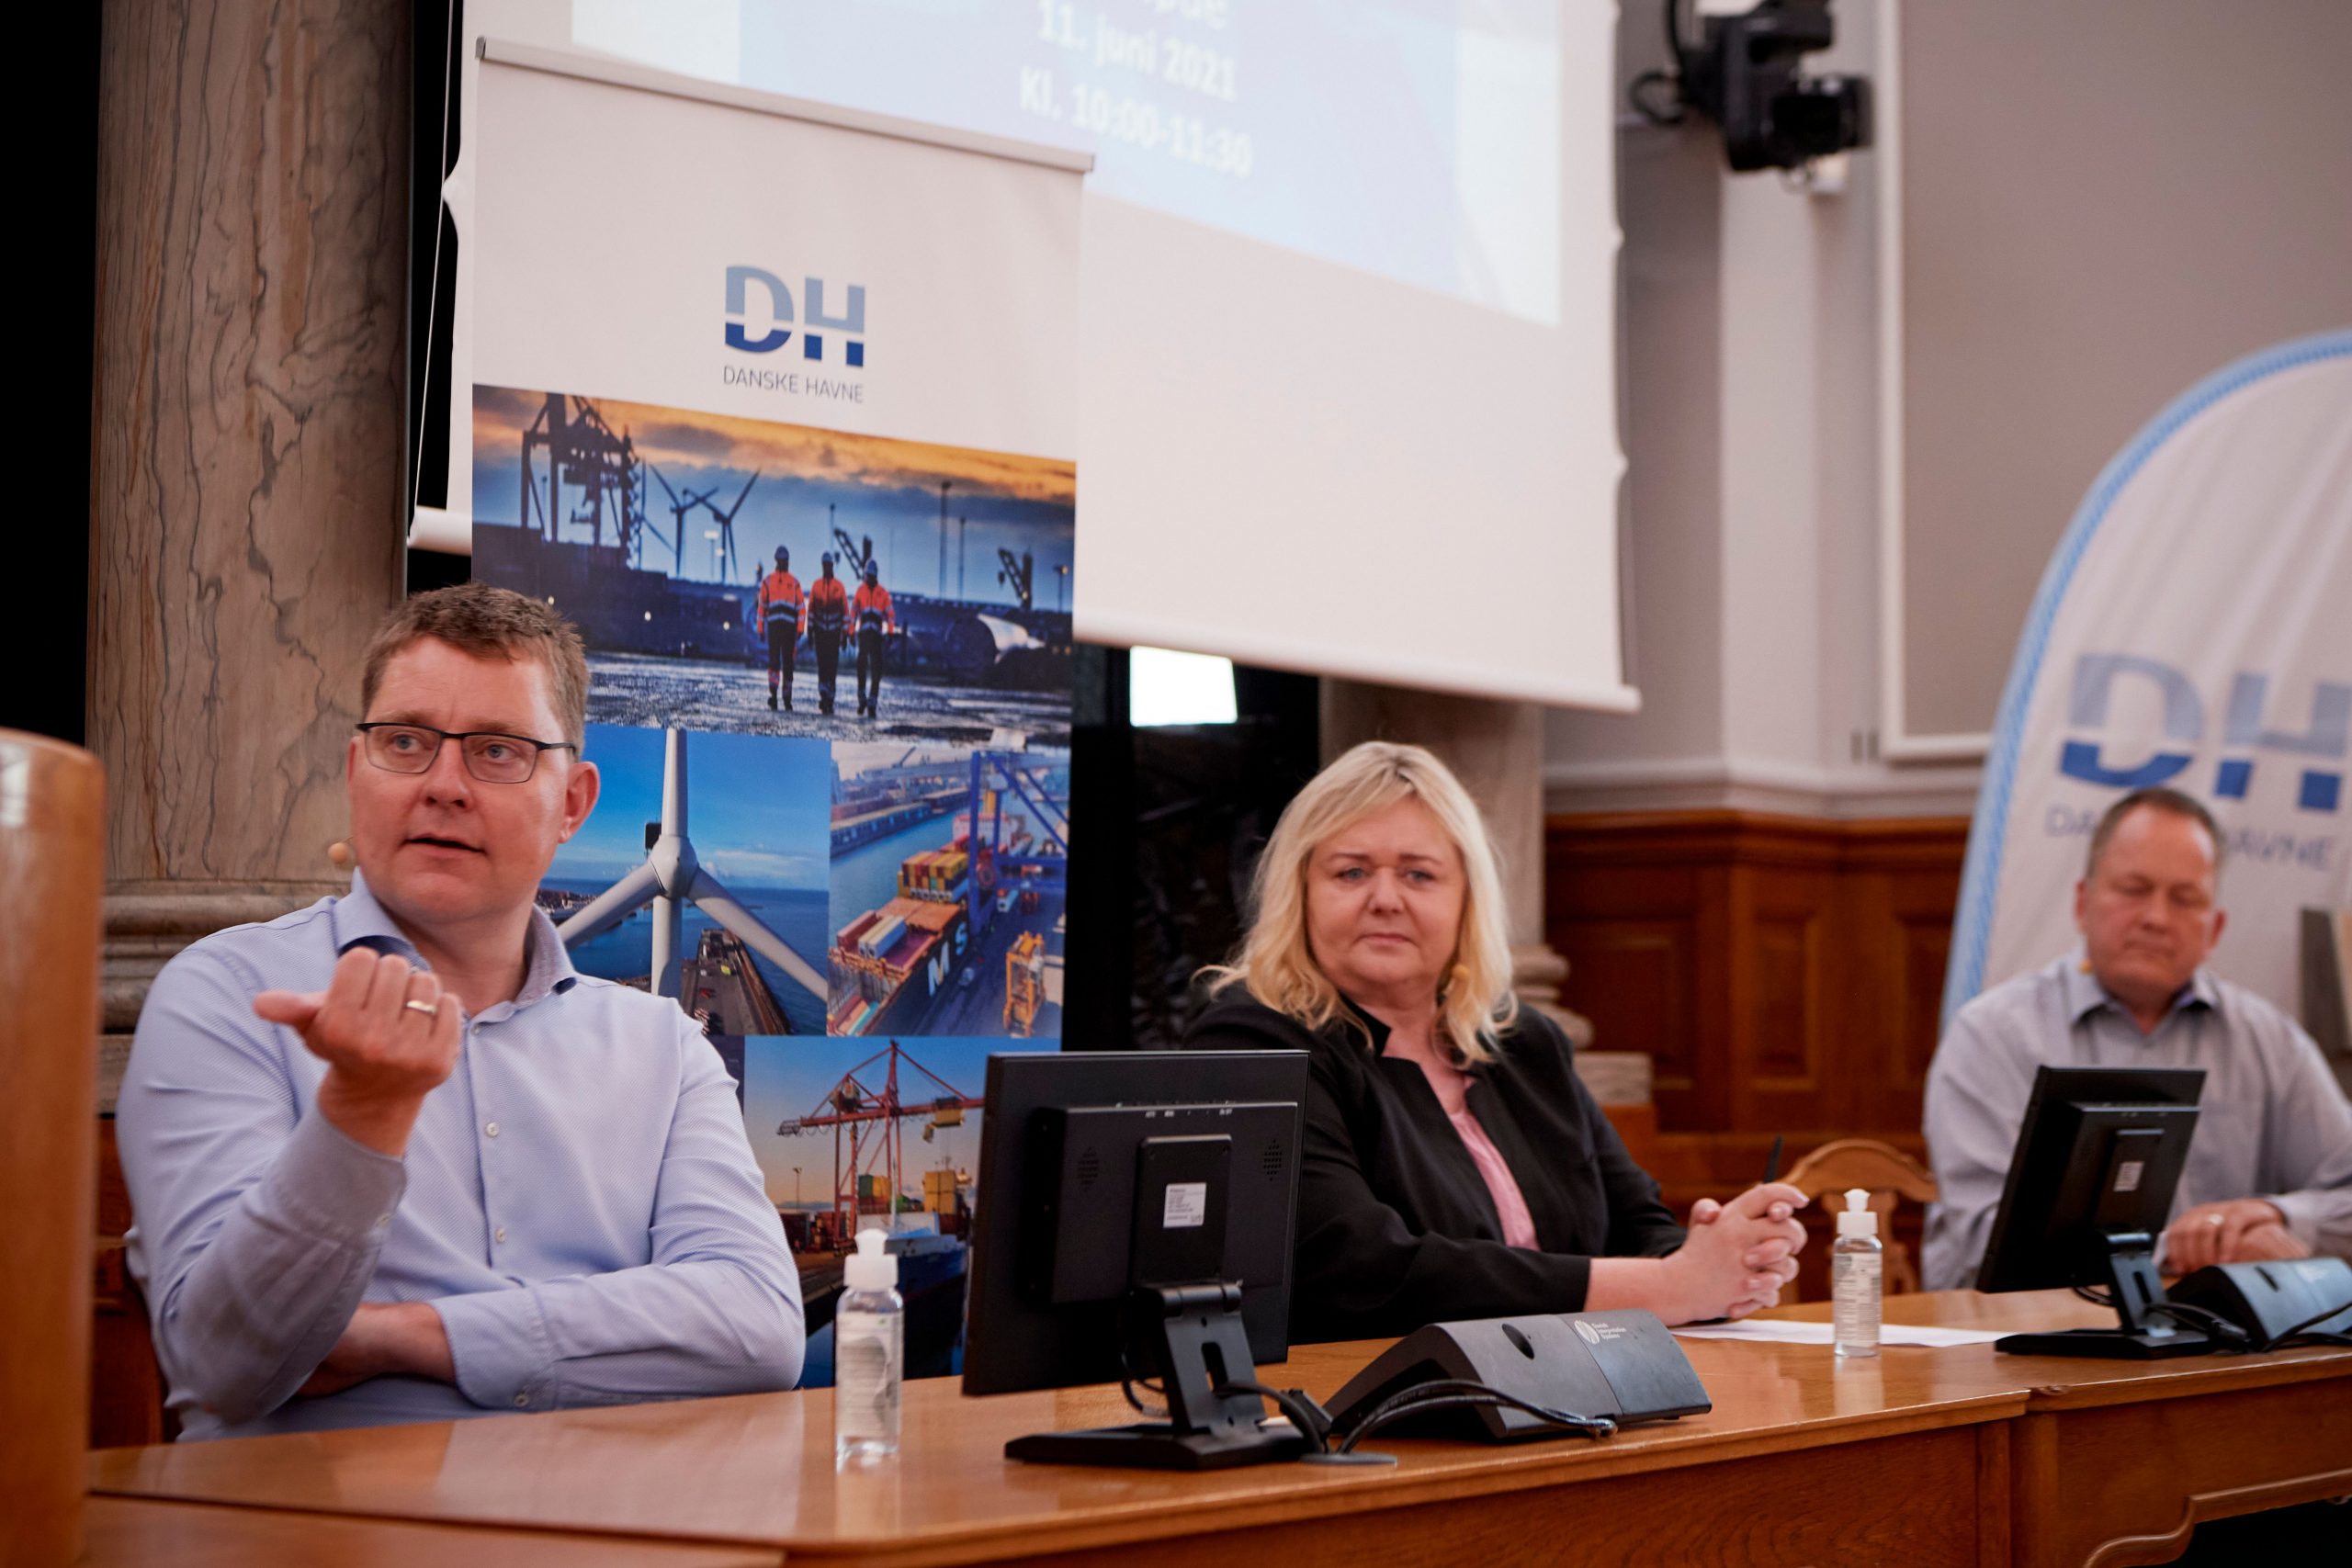 Paneldebat om havnenes rolle i Power-to-X. Fra venstre: Rasmus Helveg Petersen (RV), Mona Juul (KF) &amp; Malte Larsen (S).  Foto: Carsten Lundager.